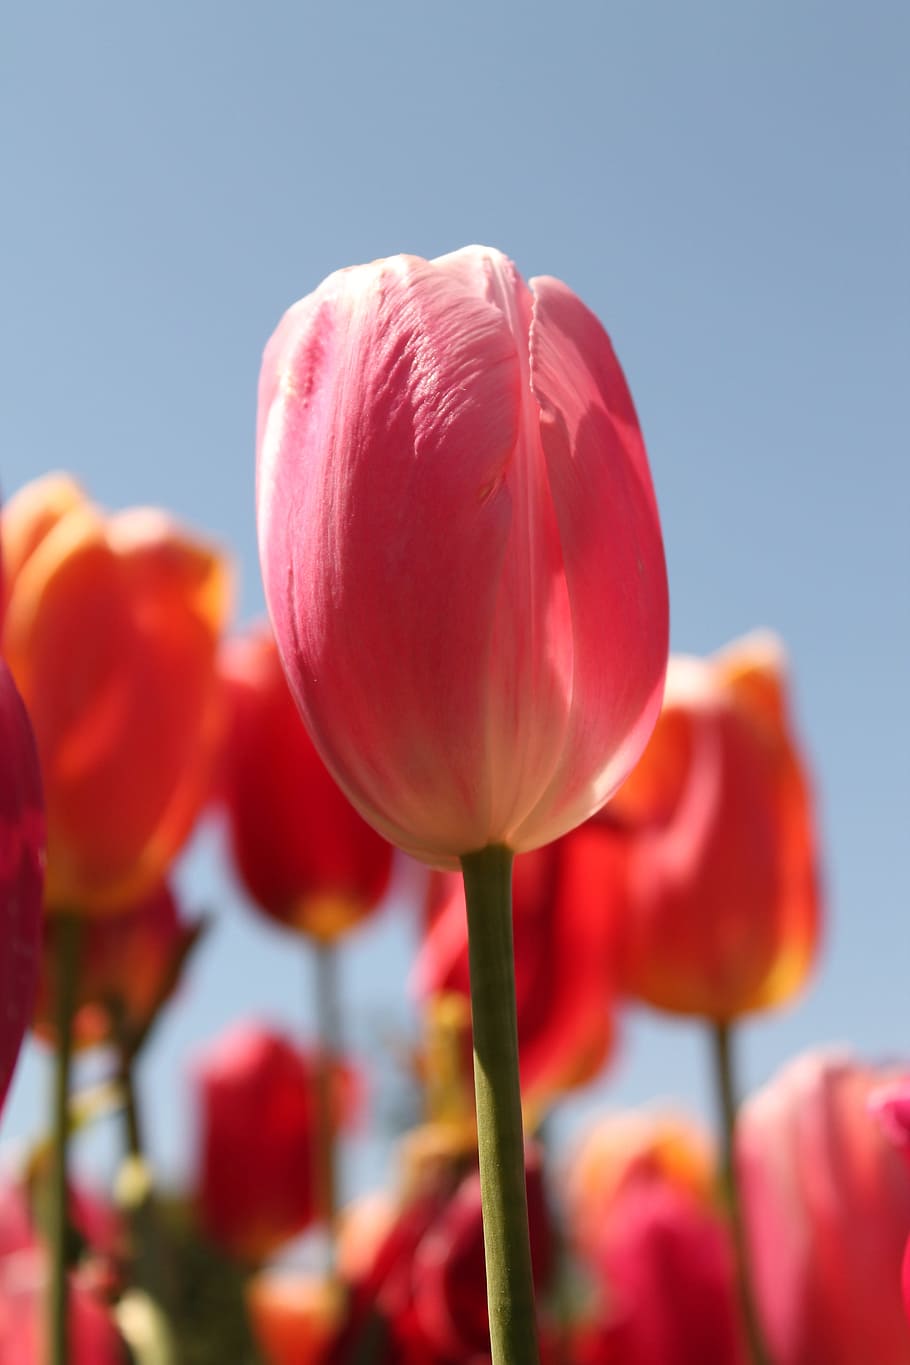 vermelho, flor tulipa flor, tulipa, festival, flor, fazenda, planta, vulnerabilidade, fragilidade, beleza da natureza